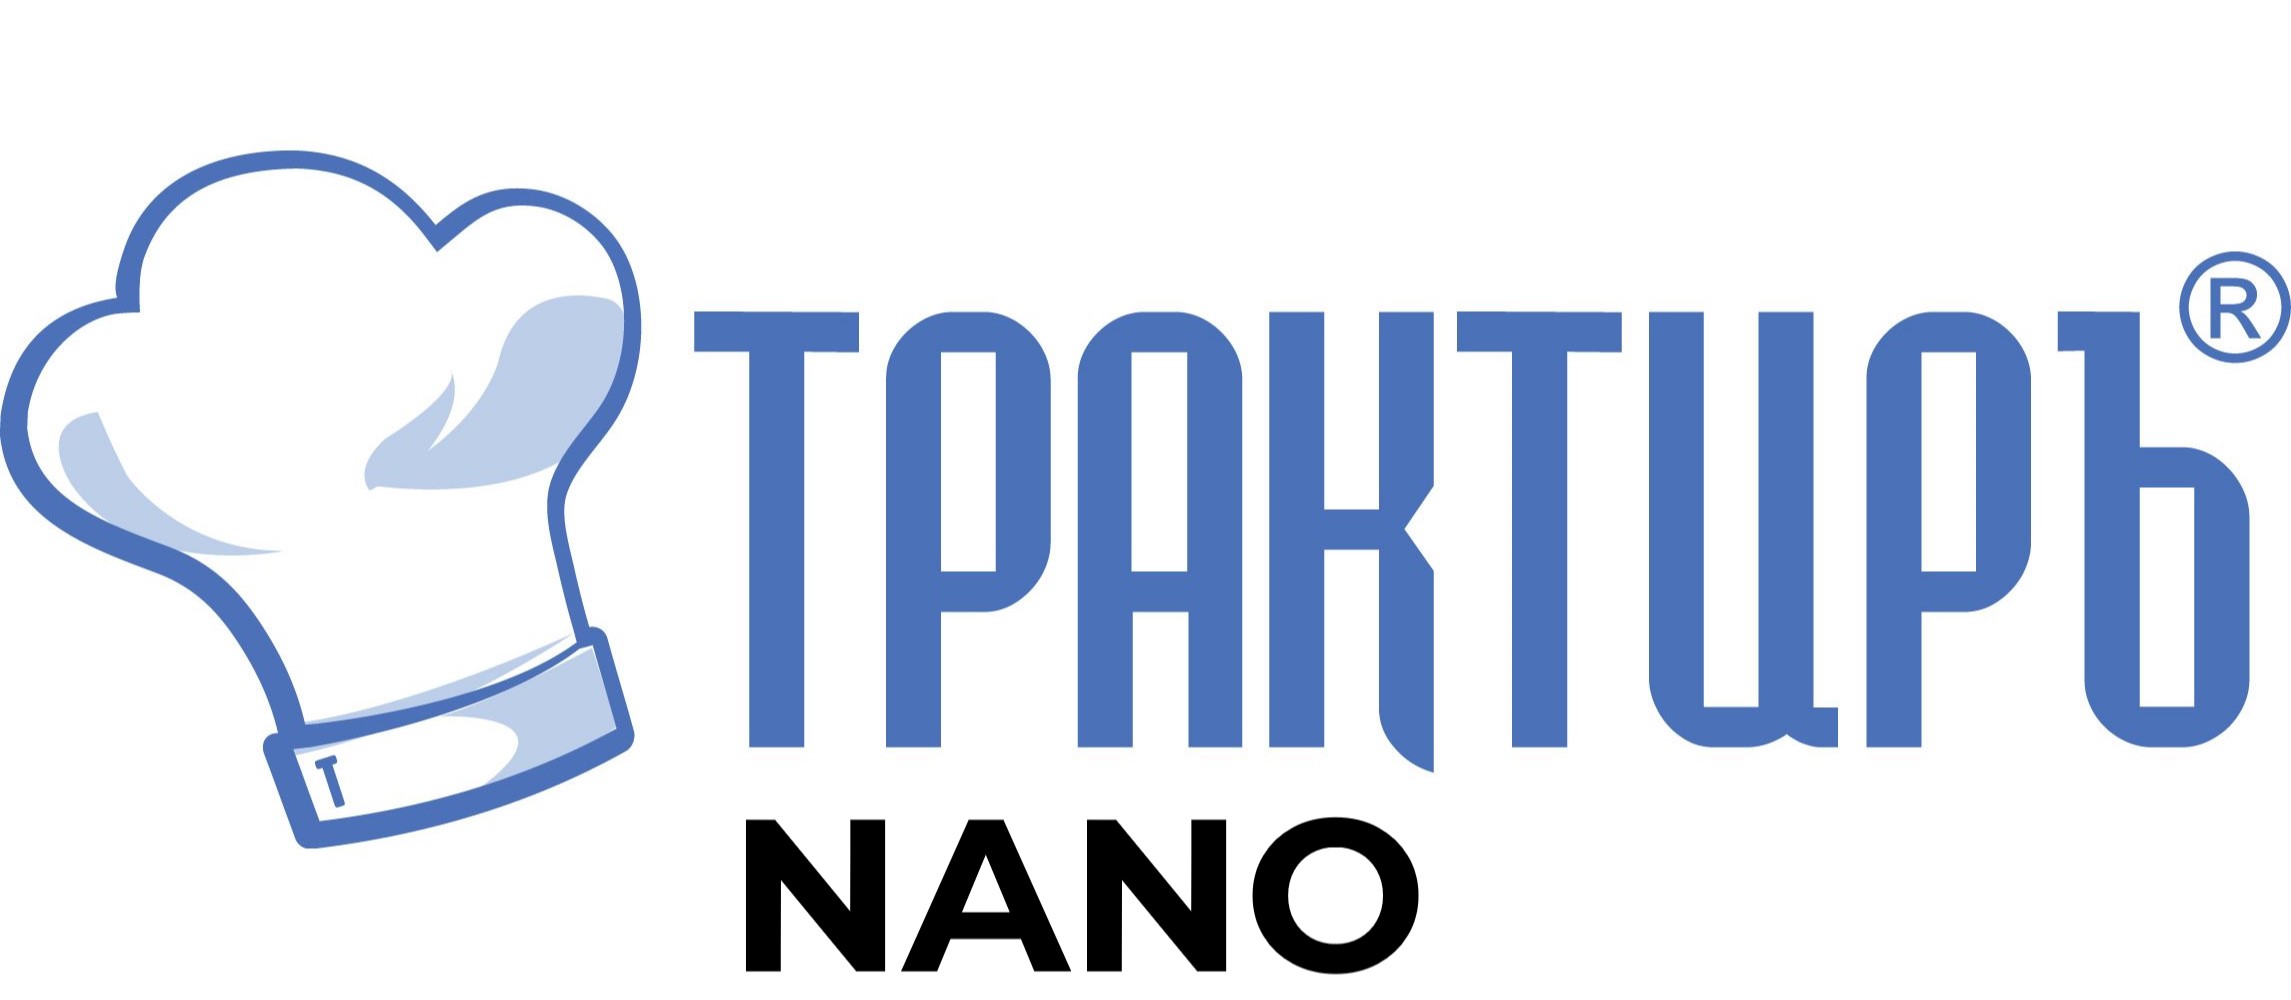 Конфигурация Трактиръ: Nano (Основная поставка) в Ульяновске